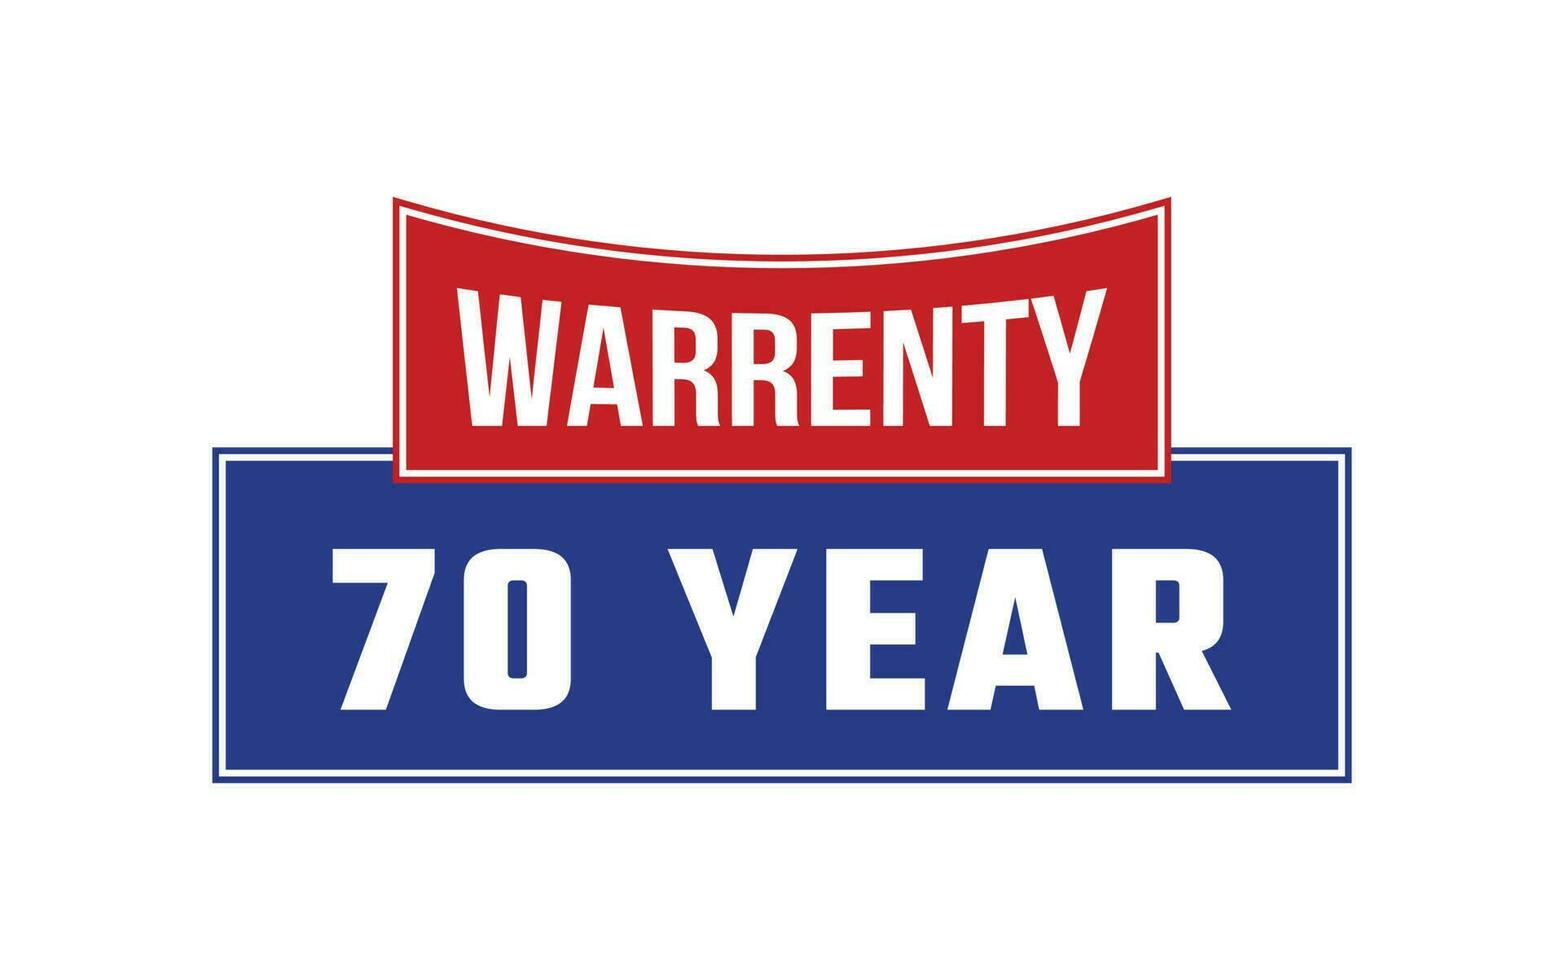 70 Year Warranty Seal Vector